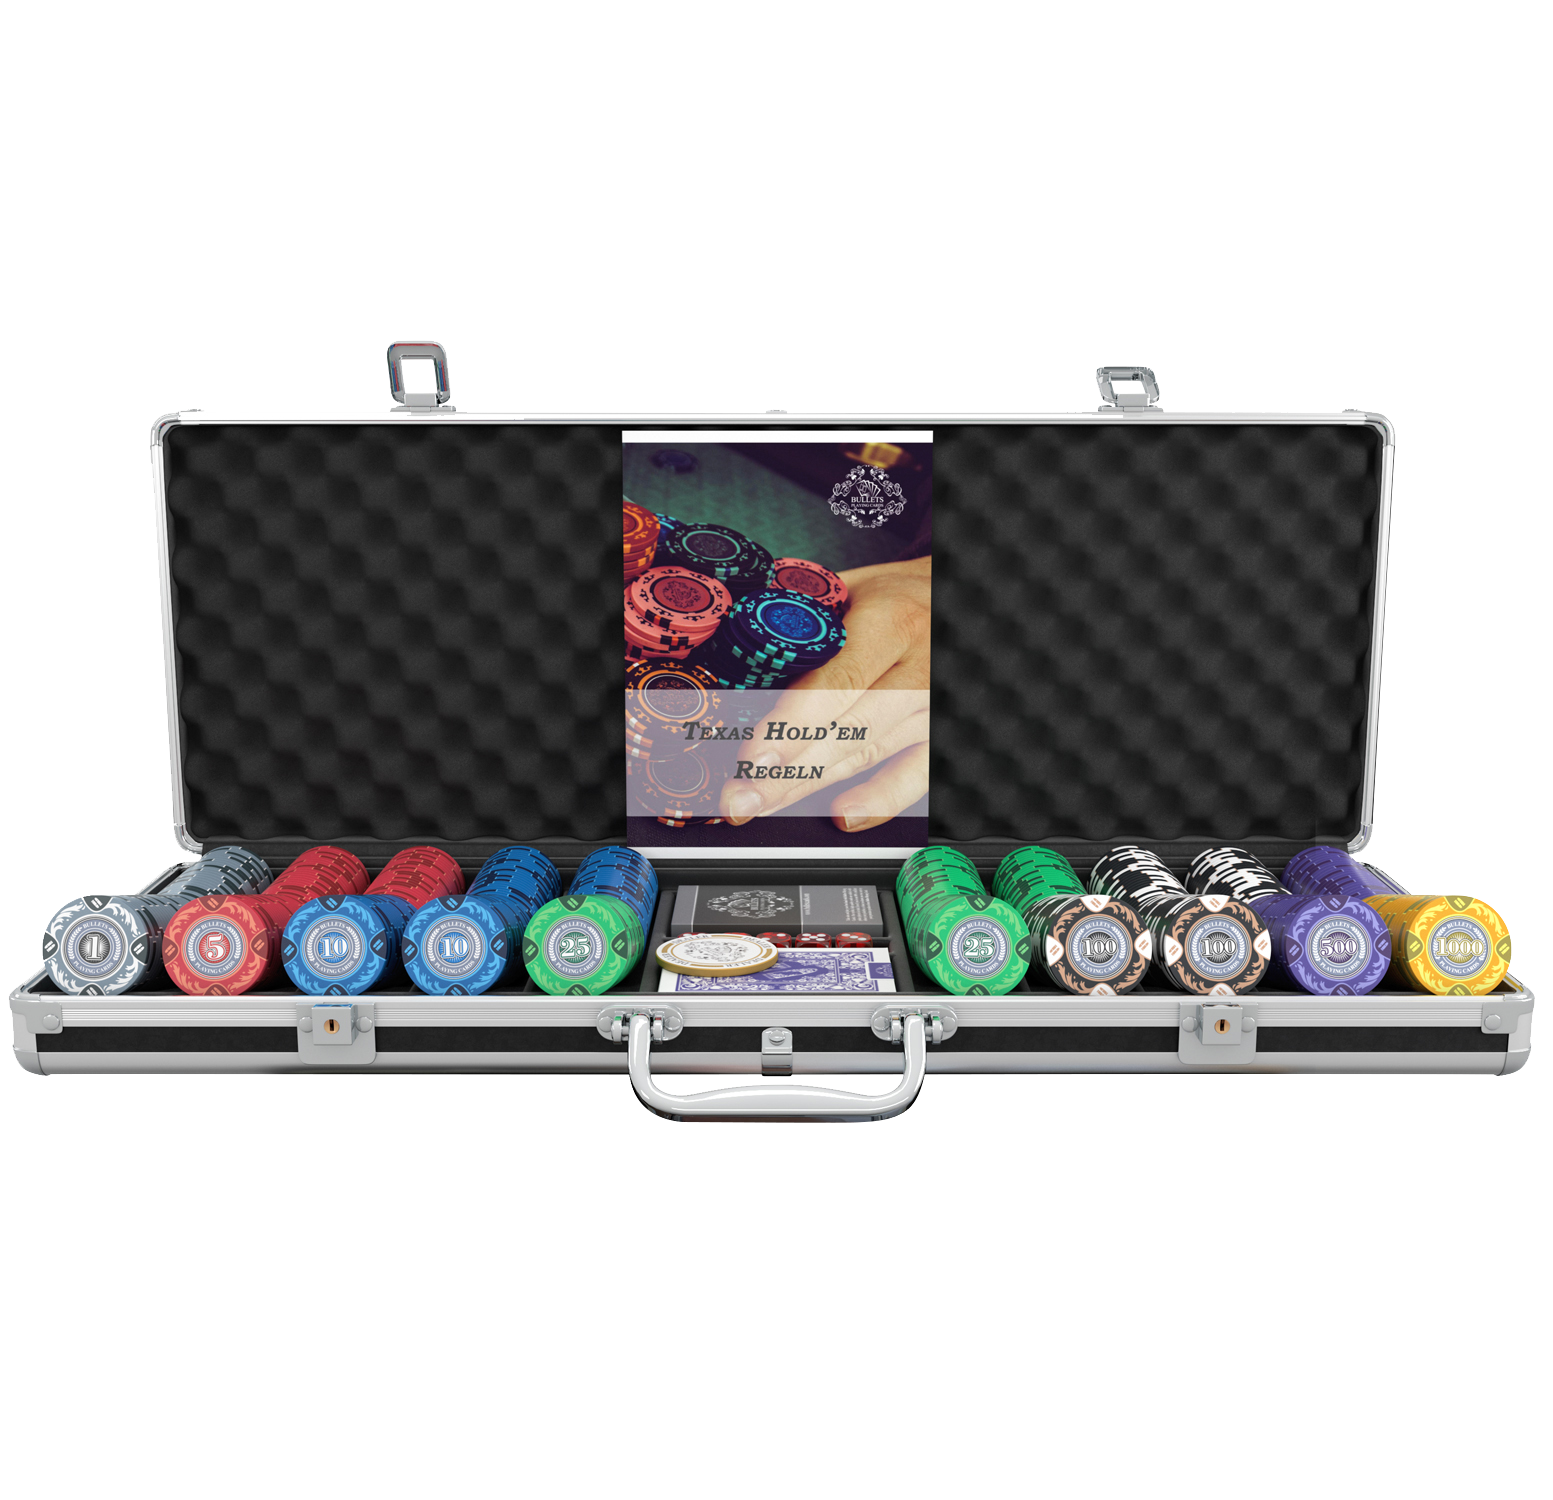 Designer Poker Case Carmela- Deluxe Poker Set with 500 Clay Poker Chips,  Poker Rules Manual, Dealer …See more Designer Poker Case Carmela- Deluxe